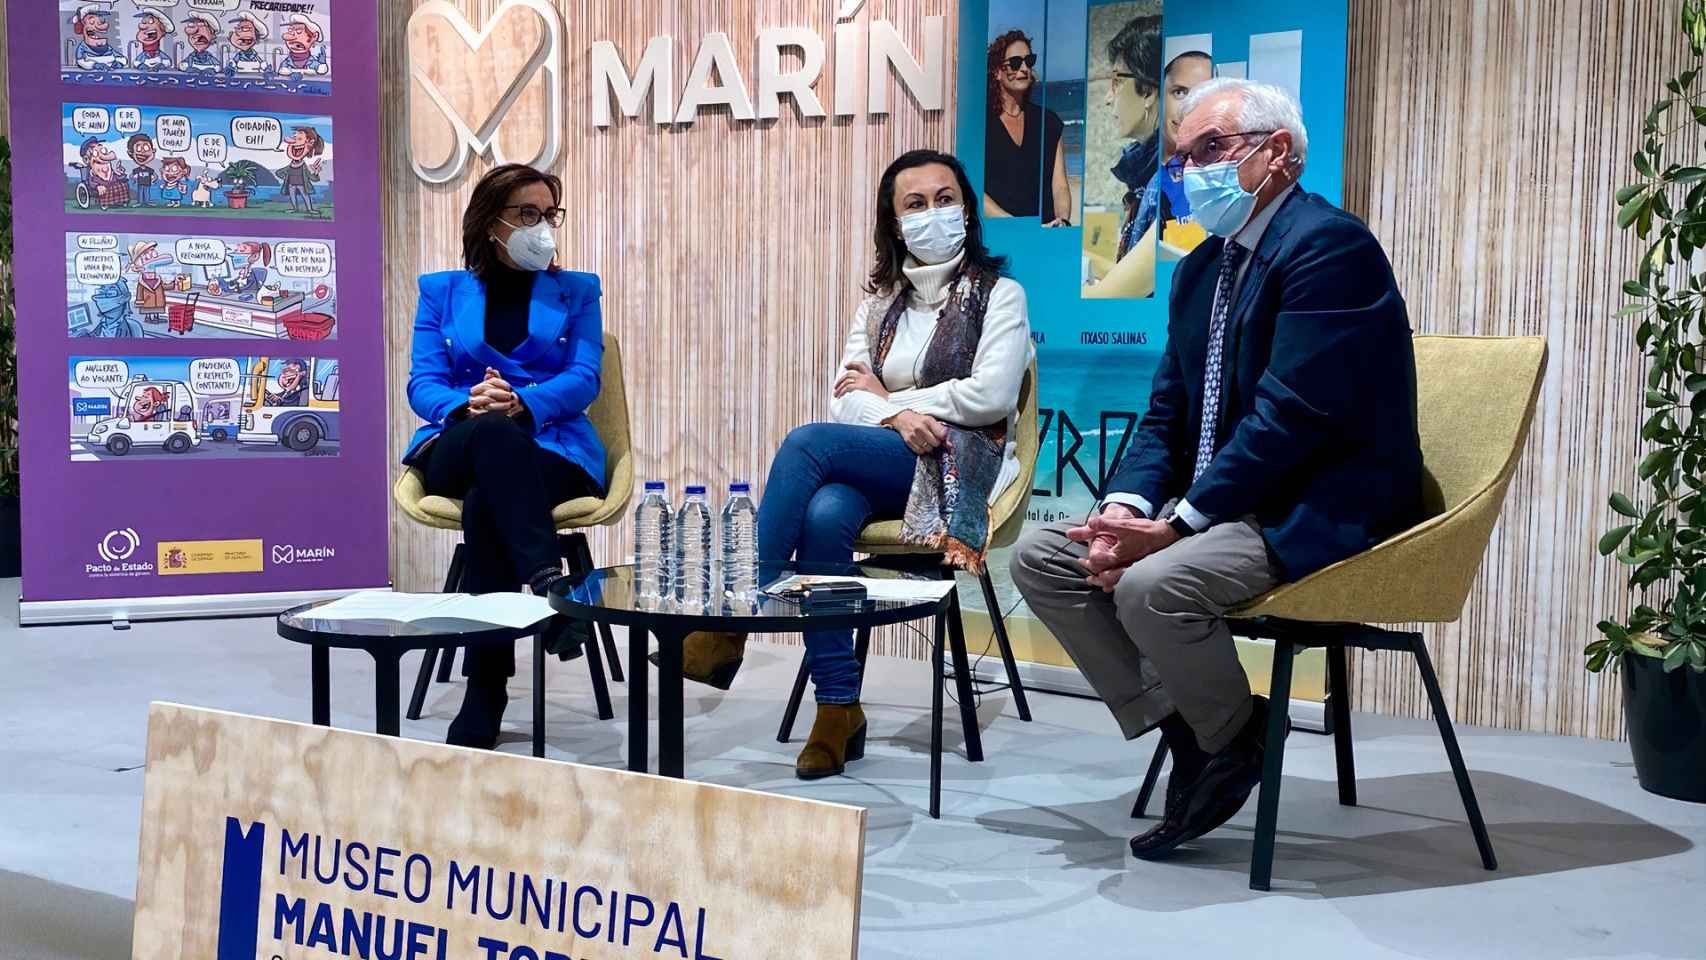 Maica Larriba, María Ramallo y Juan Martín Fragueiro durante el encuentro.